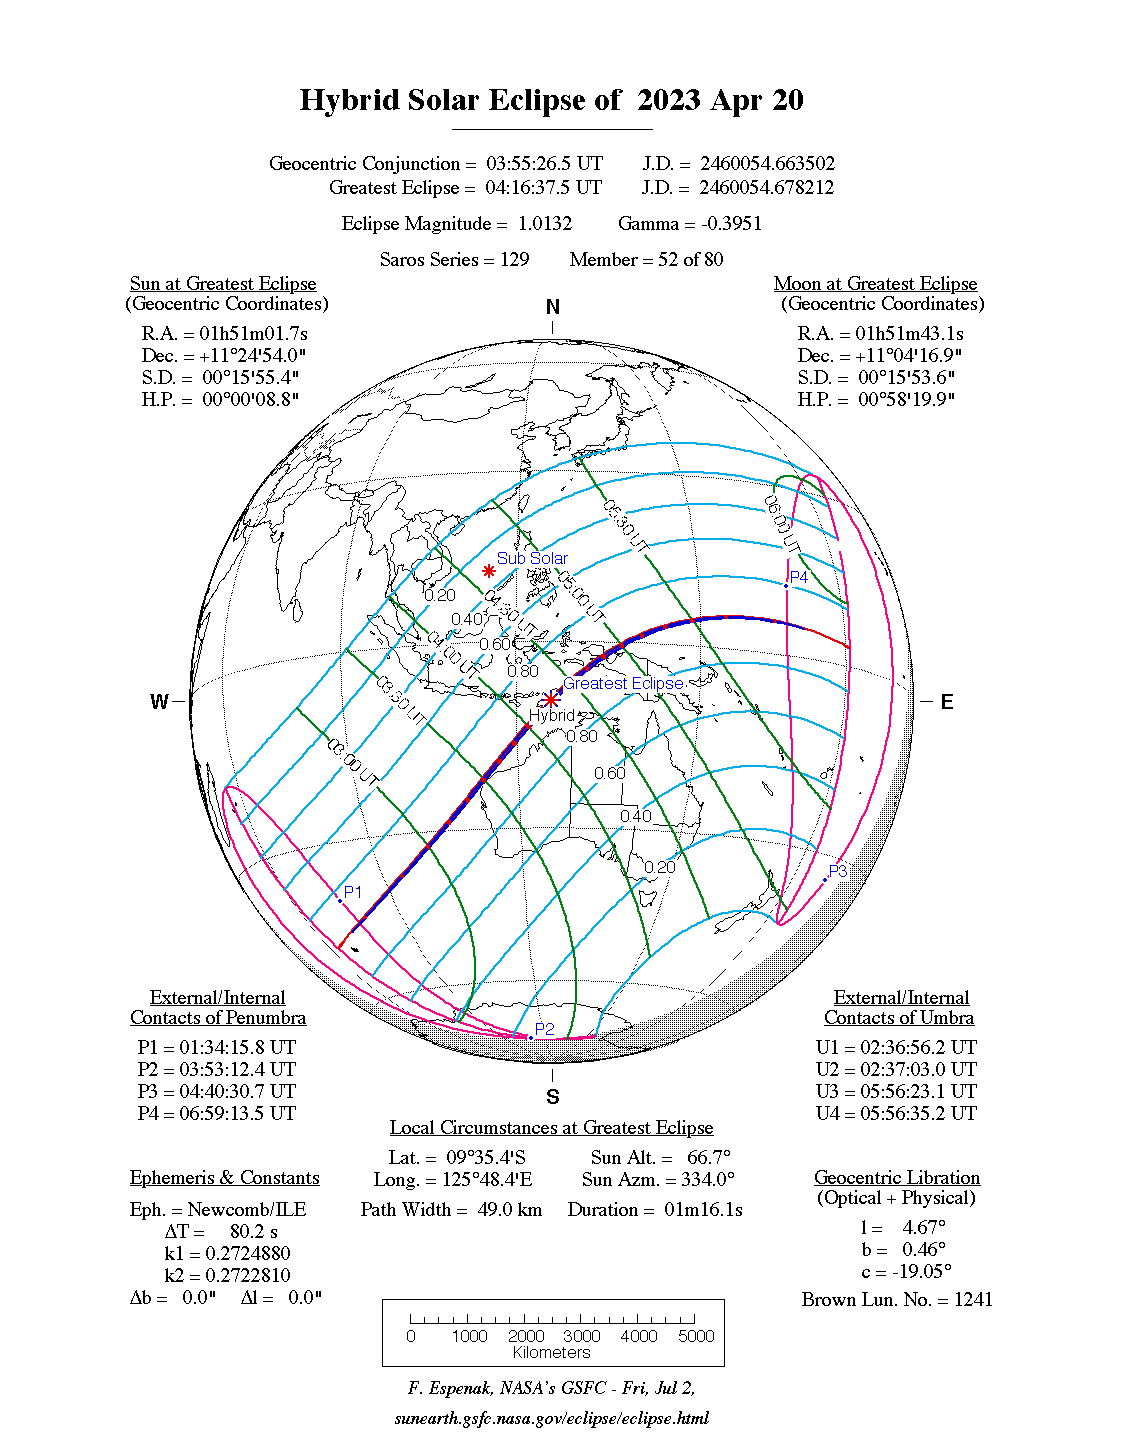 Eclipse híbrido 20 de abril 2023